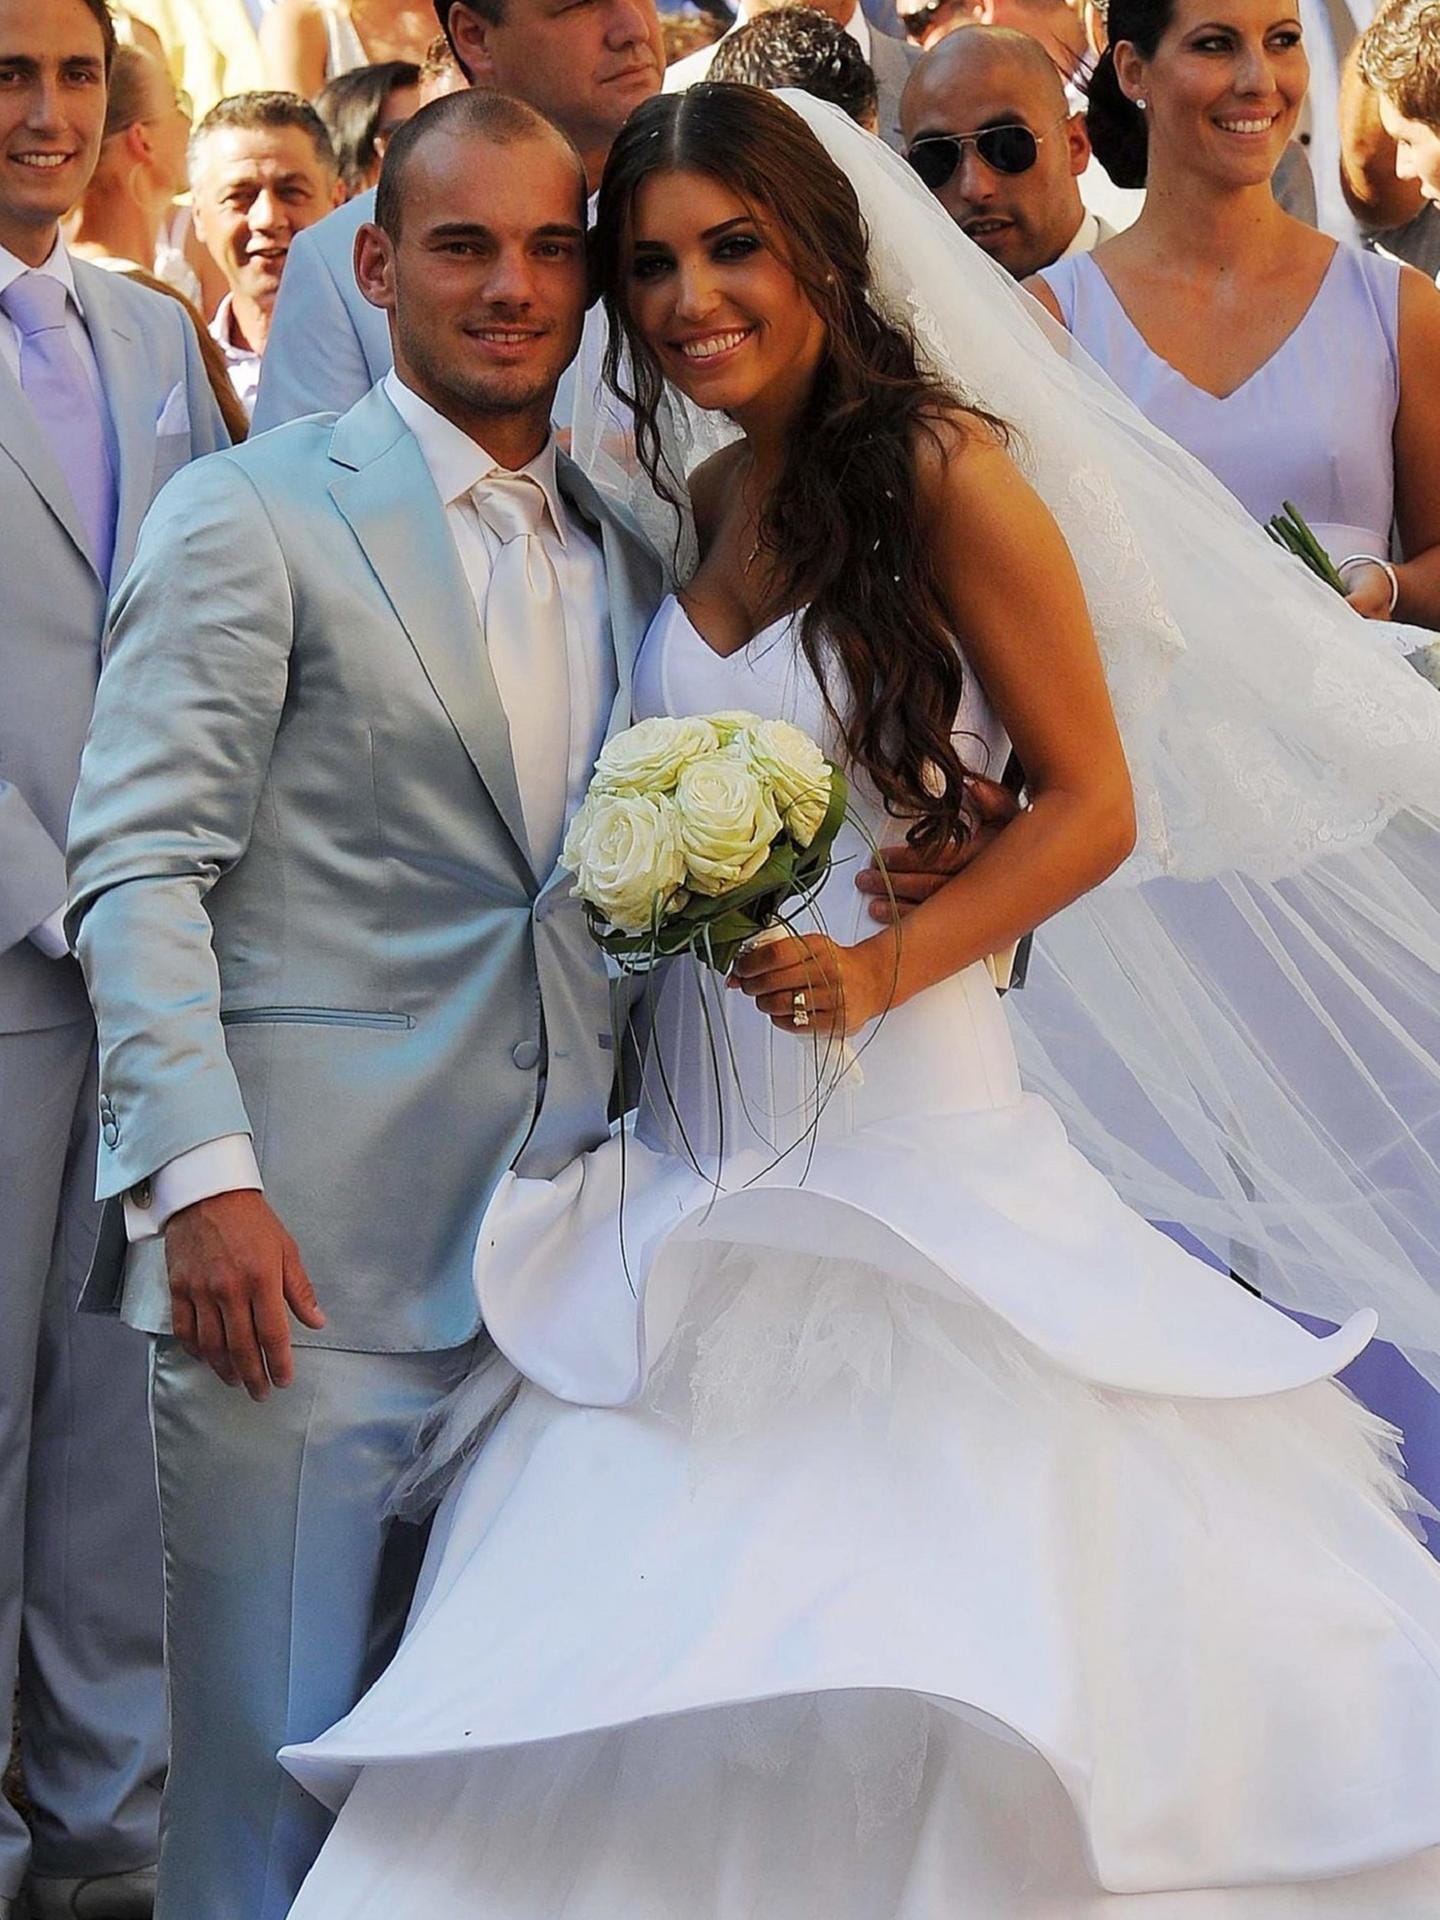 Wesley Sneijder und Yolanthe Cabau: Kurz nach der WM 2010 heiratete der Fußballer seine langjährige Model-Freundin im italienischen Castelnuovo Berardegna. 2019 trennte sich das Paar.